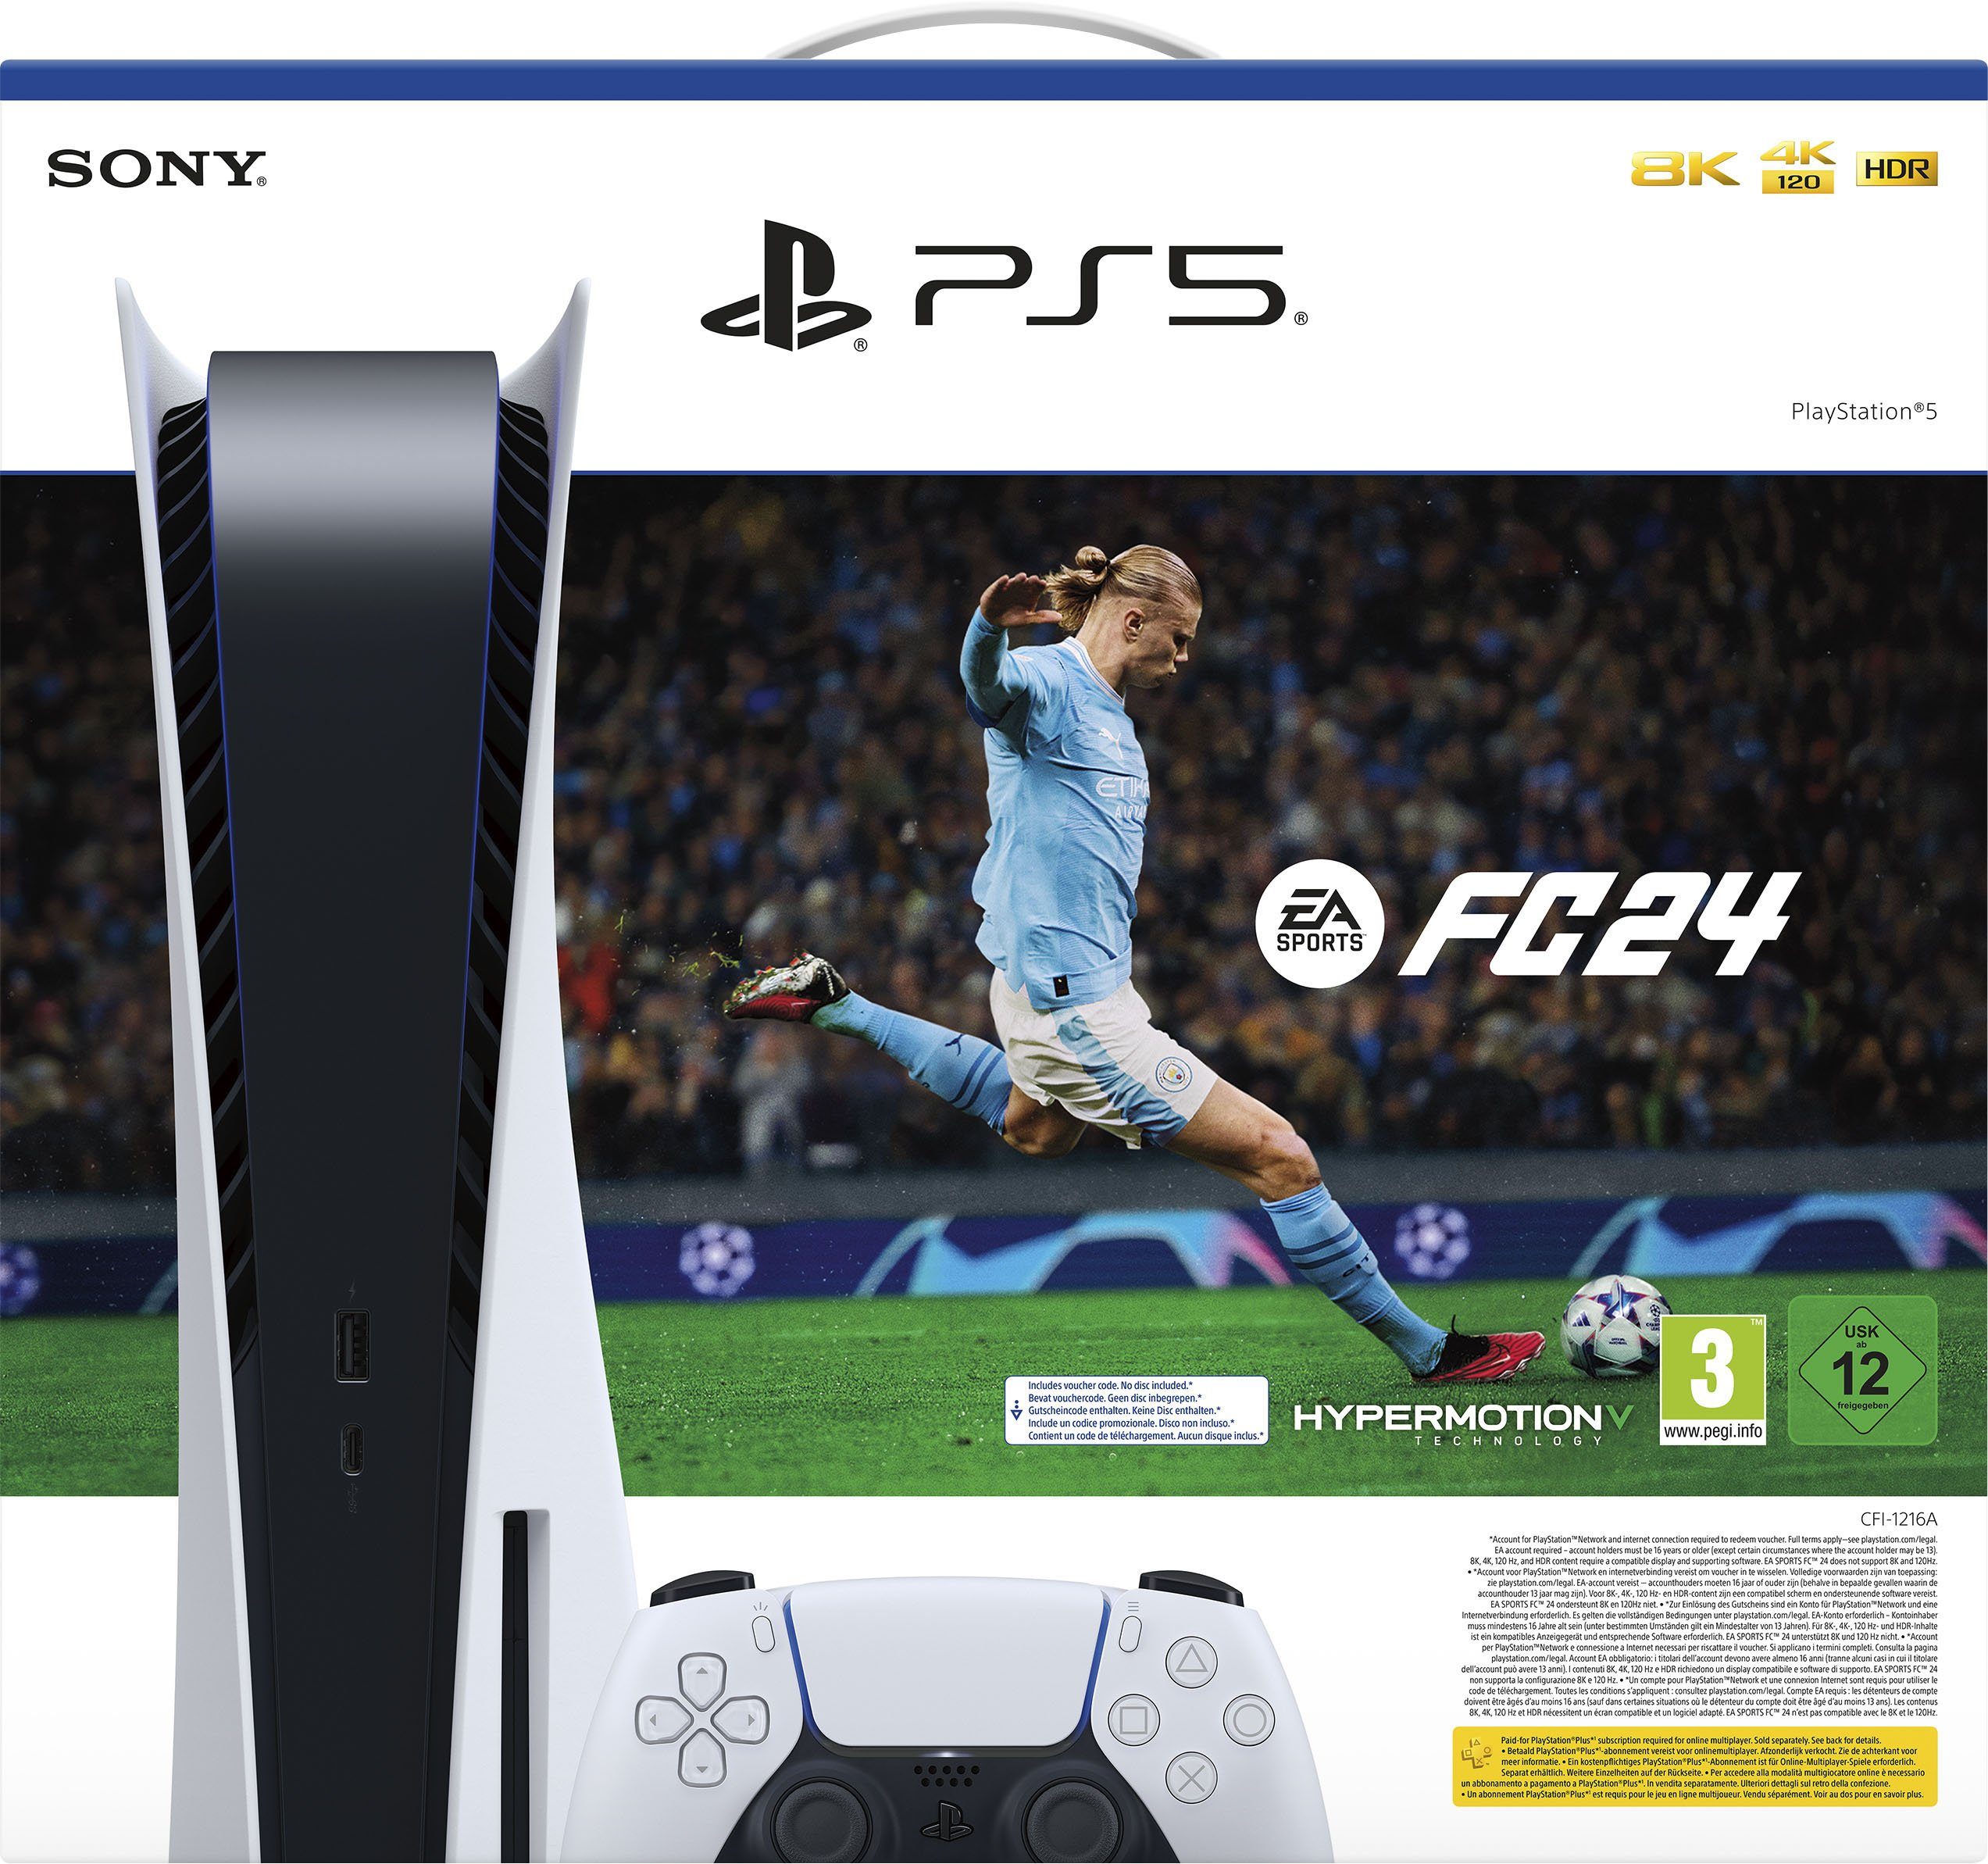 Sports EA 24 Sony PlayStation Disk 5, + FC Edition (DLC)